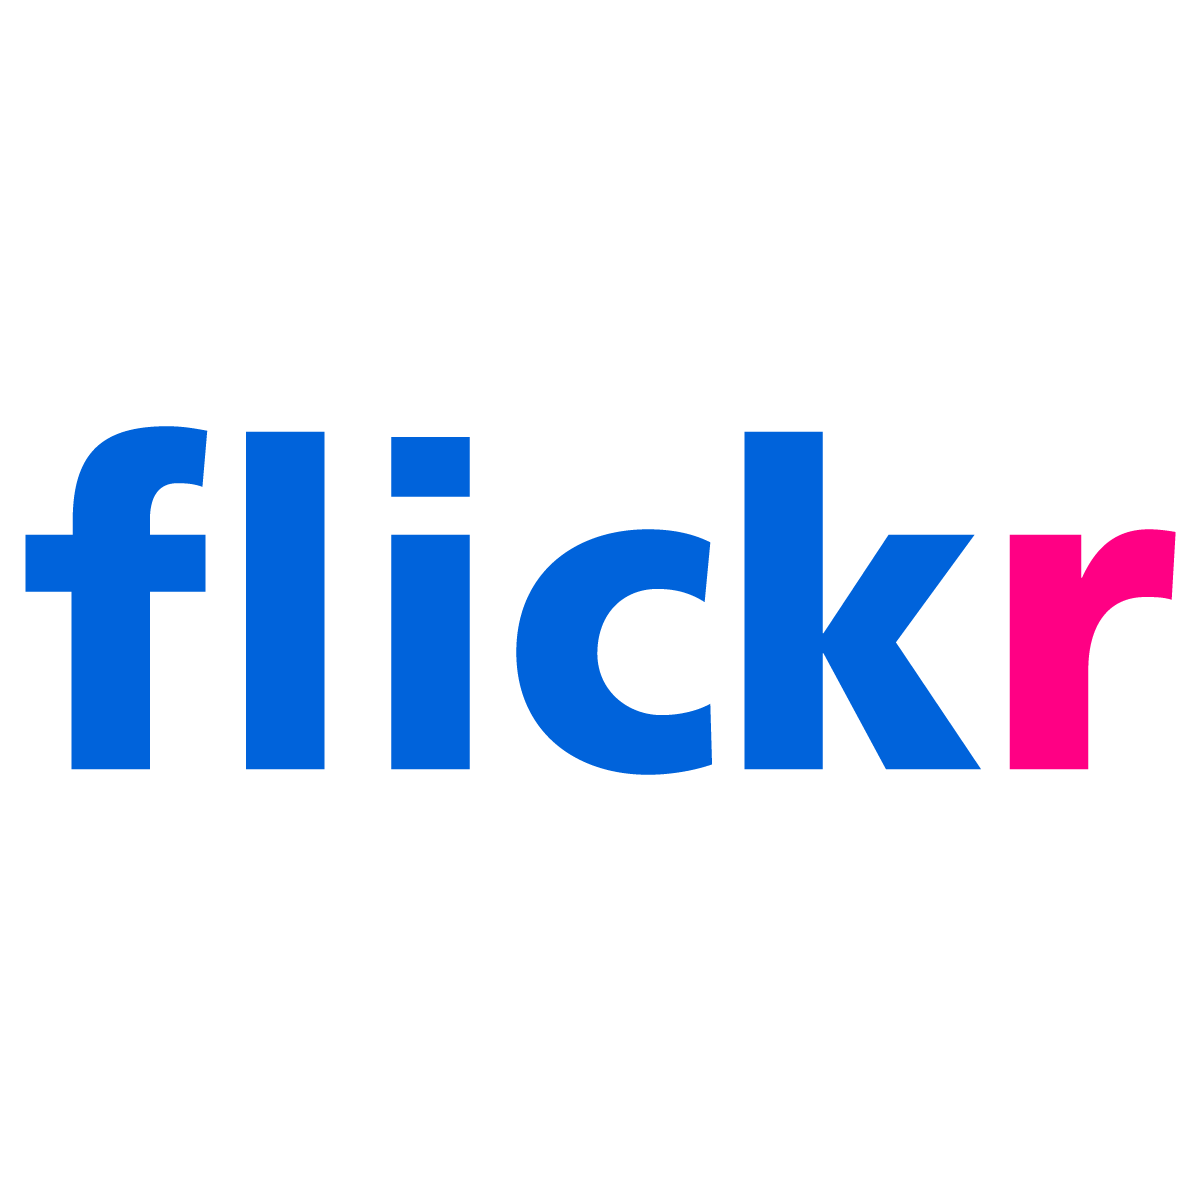 Logo Flickr - Frutiger est une police de caractères populaire et flexible - Image